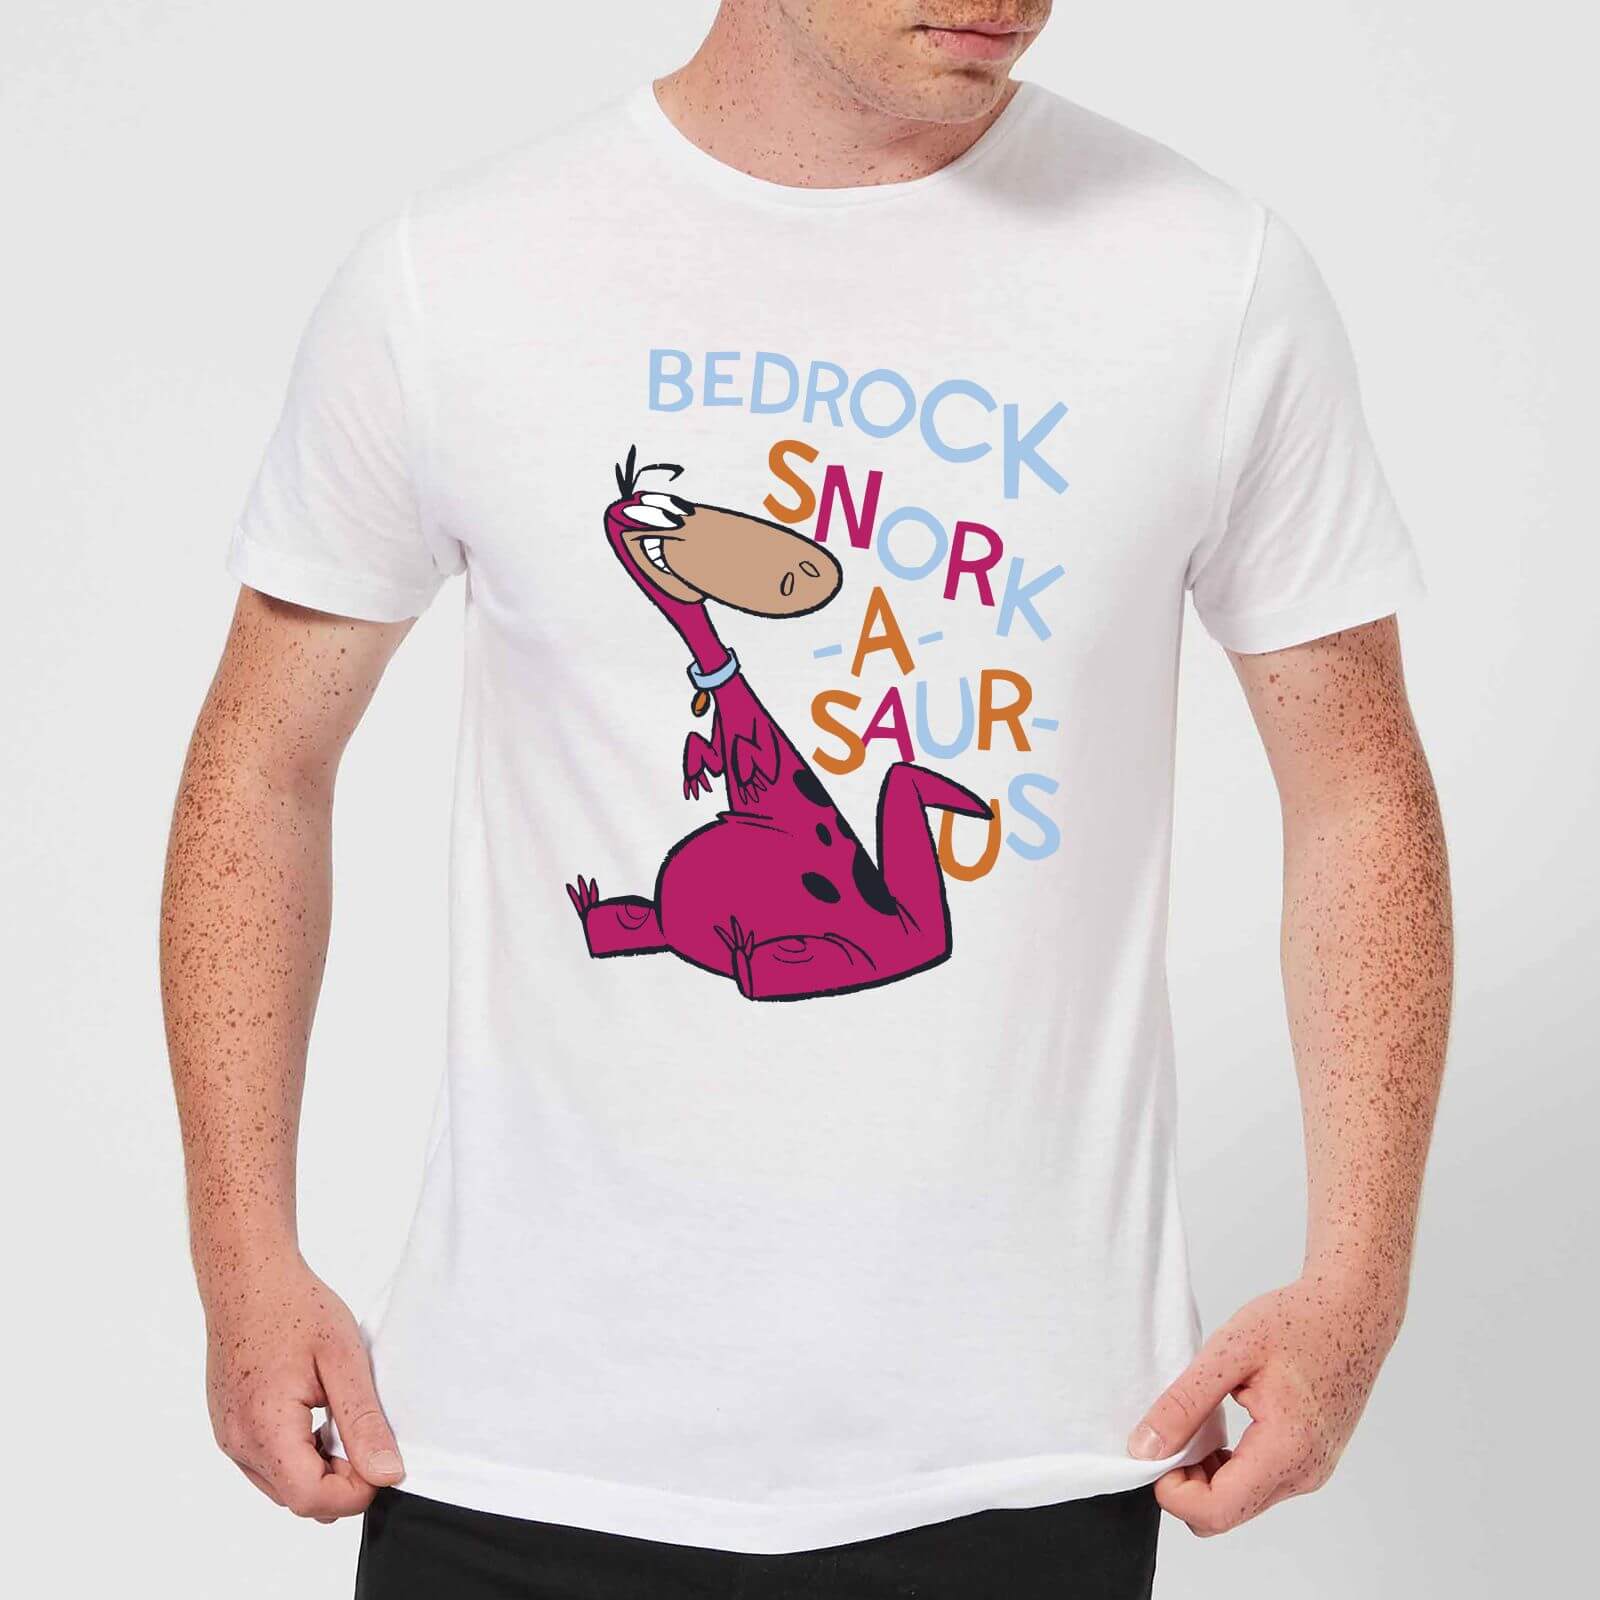 The Flintstones Bedrock Snork-A-Saur-Us Men's T-Shirt - White - XS - White